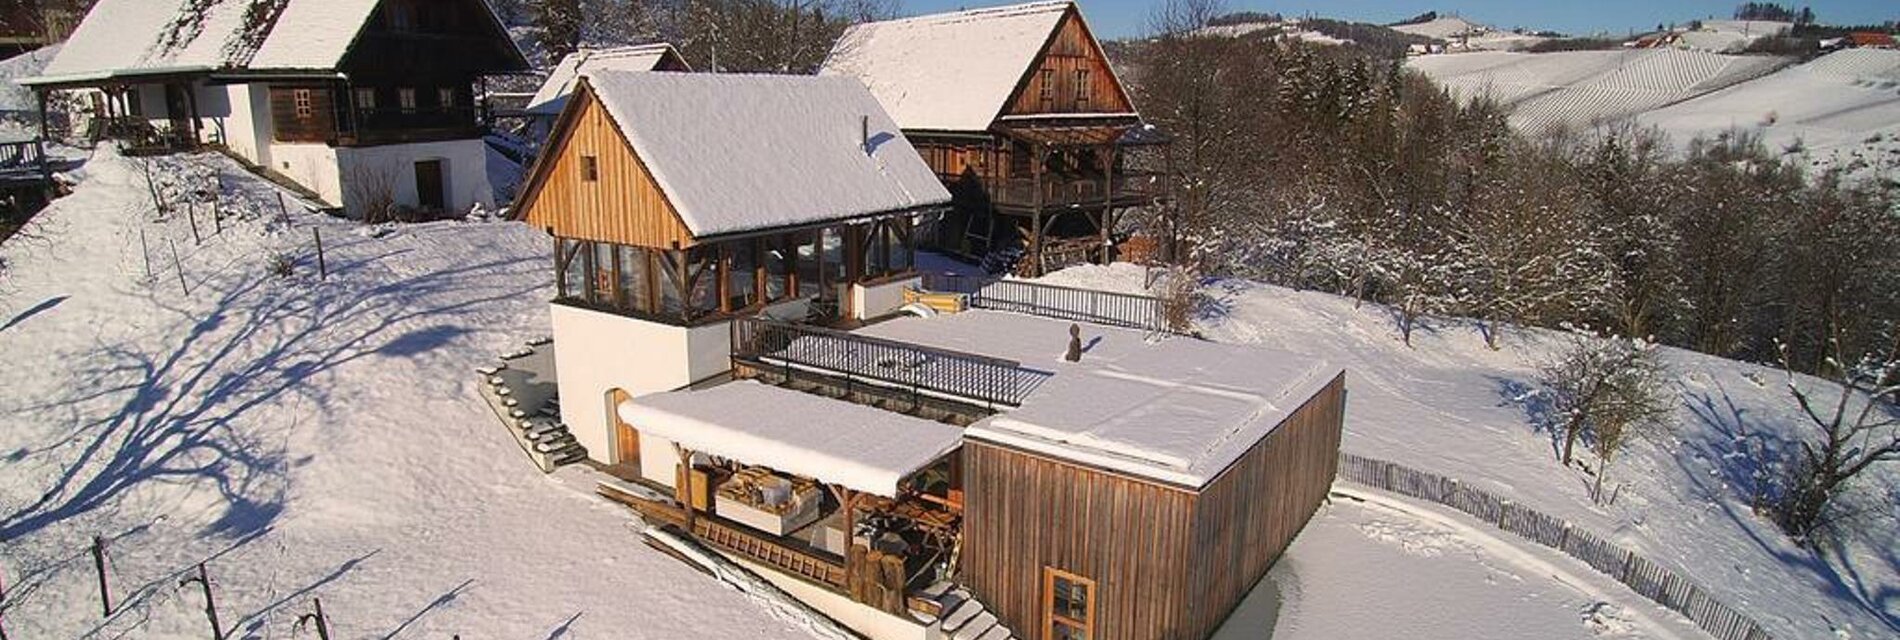 Zinnhof im Winter